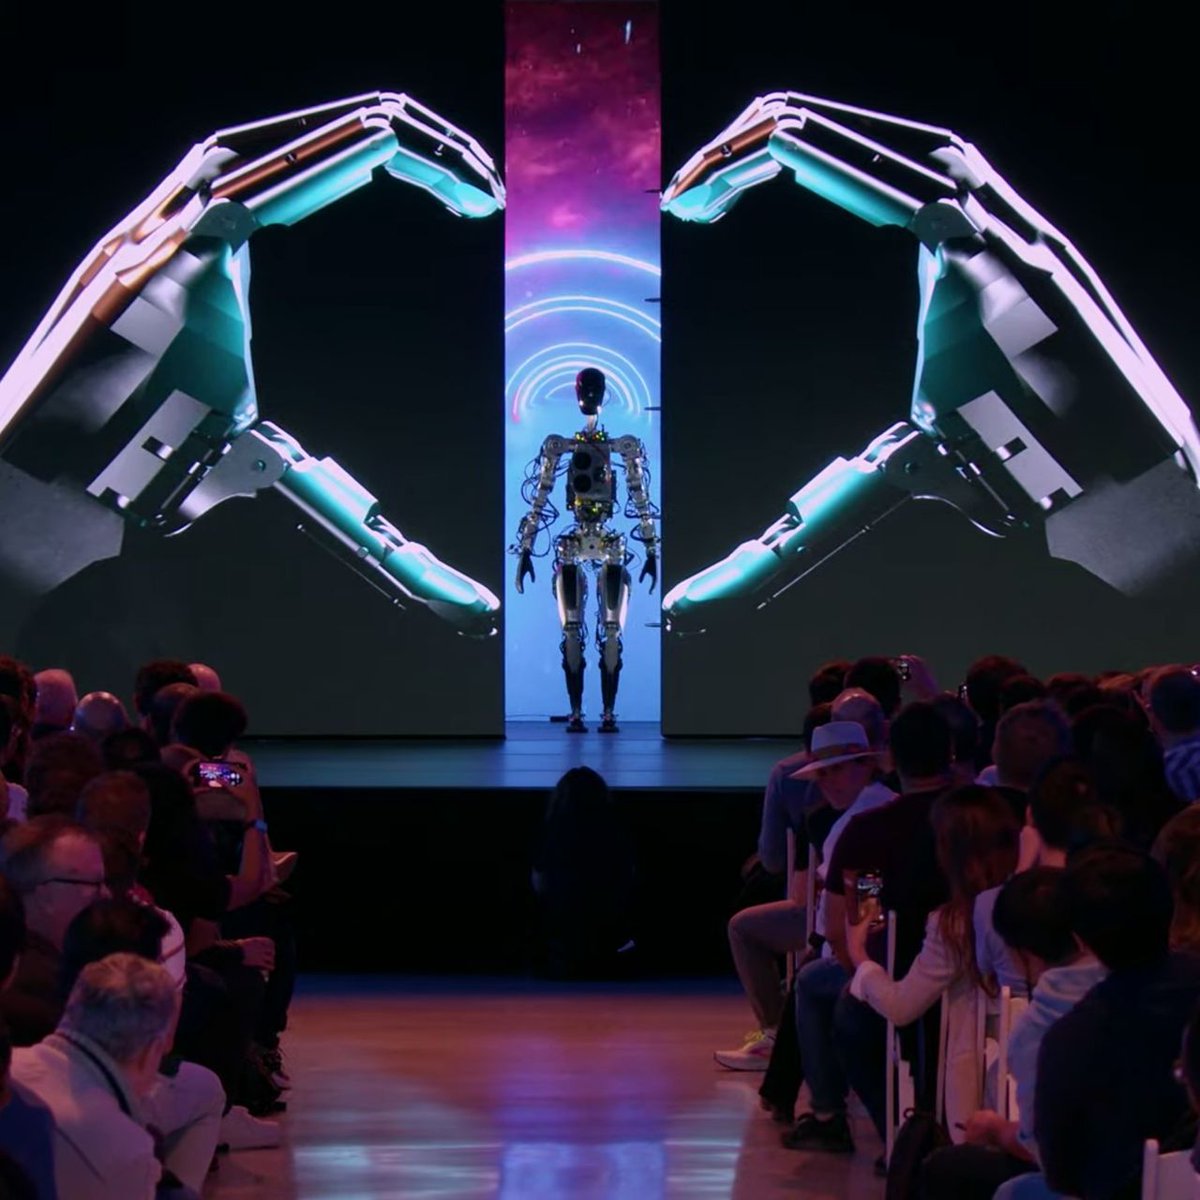 🚀¿Robots que aprenden solos? ¡Descubre cómo #ElonMusk está forjando el futuro con su robot humanoide Optimus! Sumérgete en la ciencia detrás de la ficción #Biografía ➡️ [buff.ly/3tHVE8R] #Tecnología #Futuro #Tesla #IA #Robótica #RecomiendoLeer #Libros #Visionario